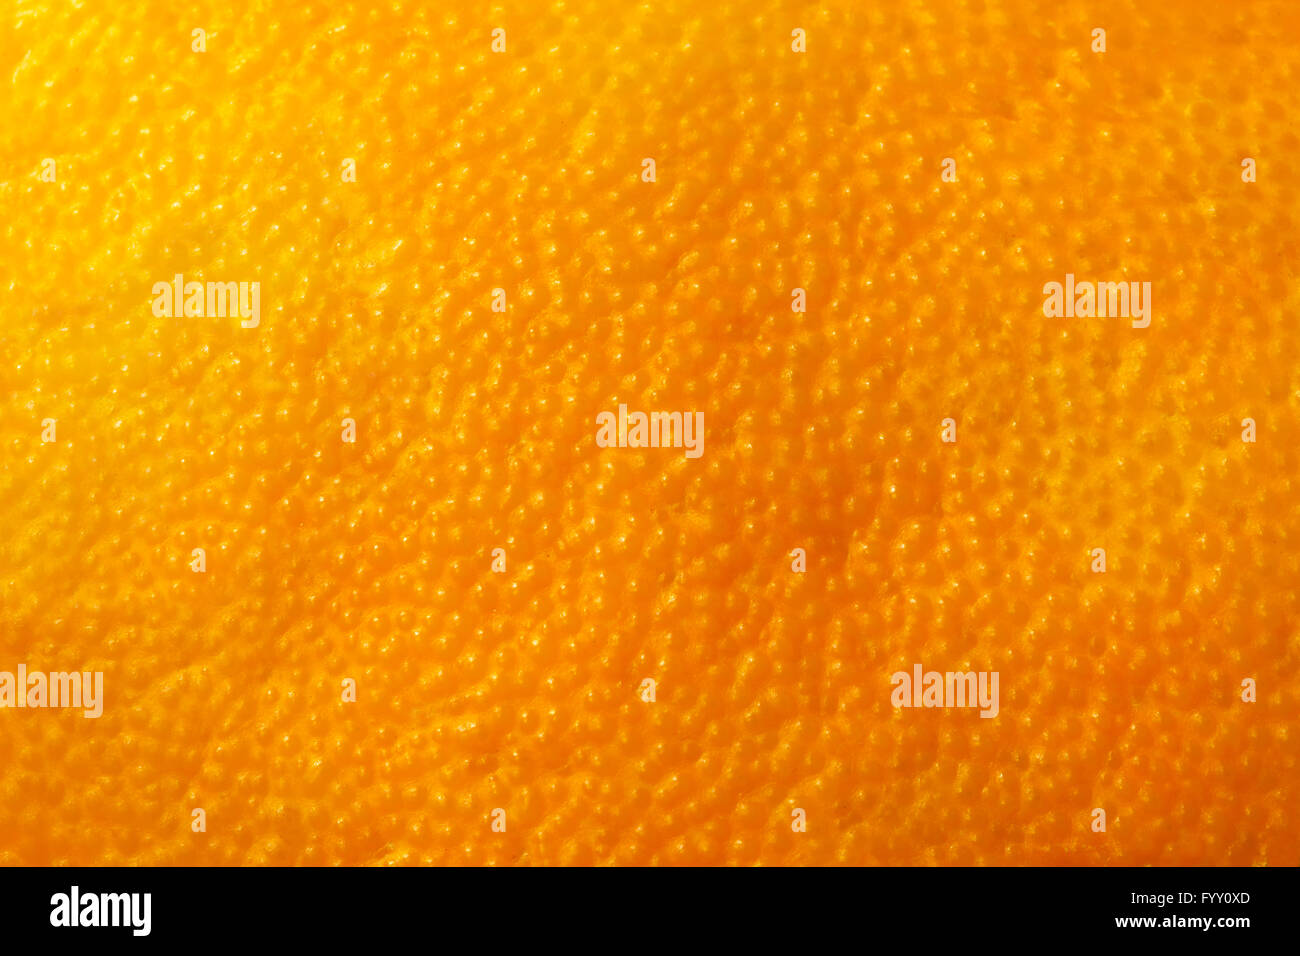 Orange fruit rind natural background Stock Photo